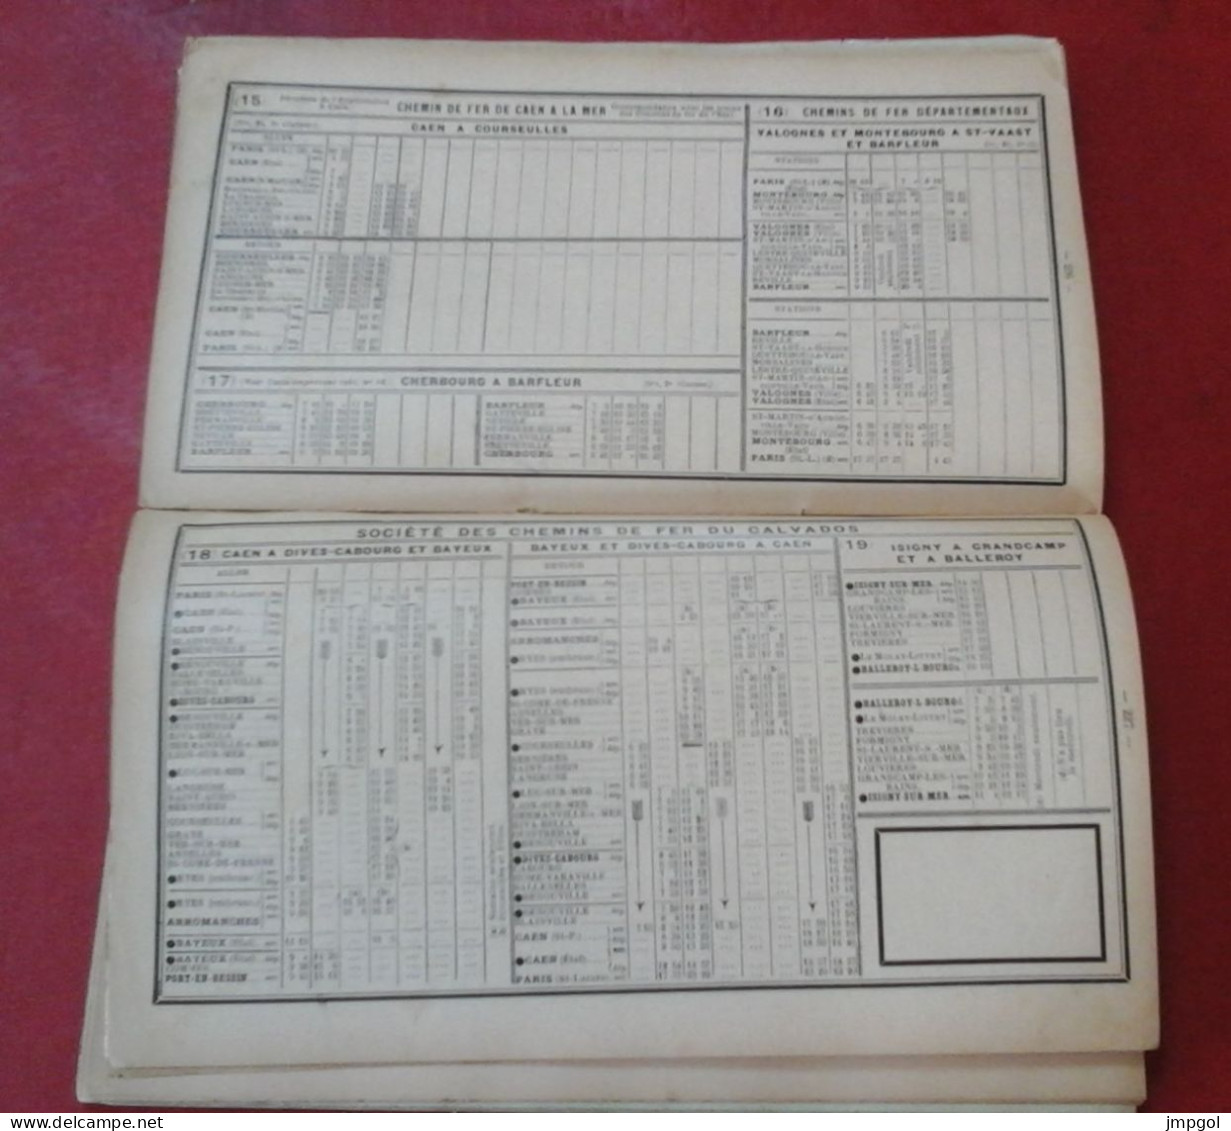 Livret Guide Officiel Chemins de fer de l'Etat 1923 Normandie Bretagne Jersey Londres Tourisme Horaires Trains Bateaux